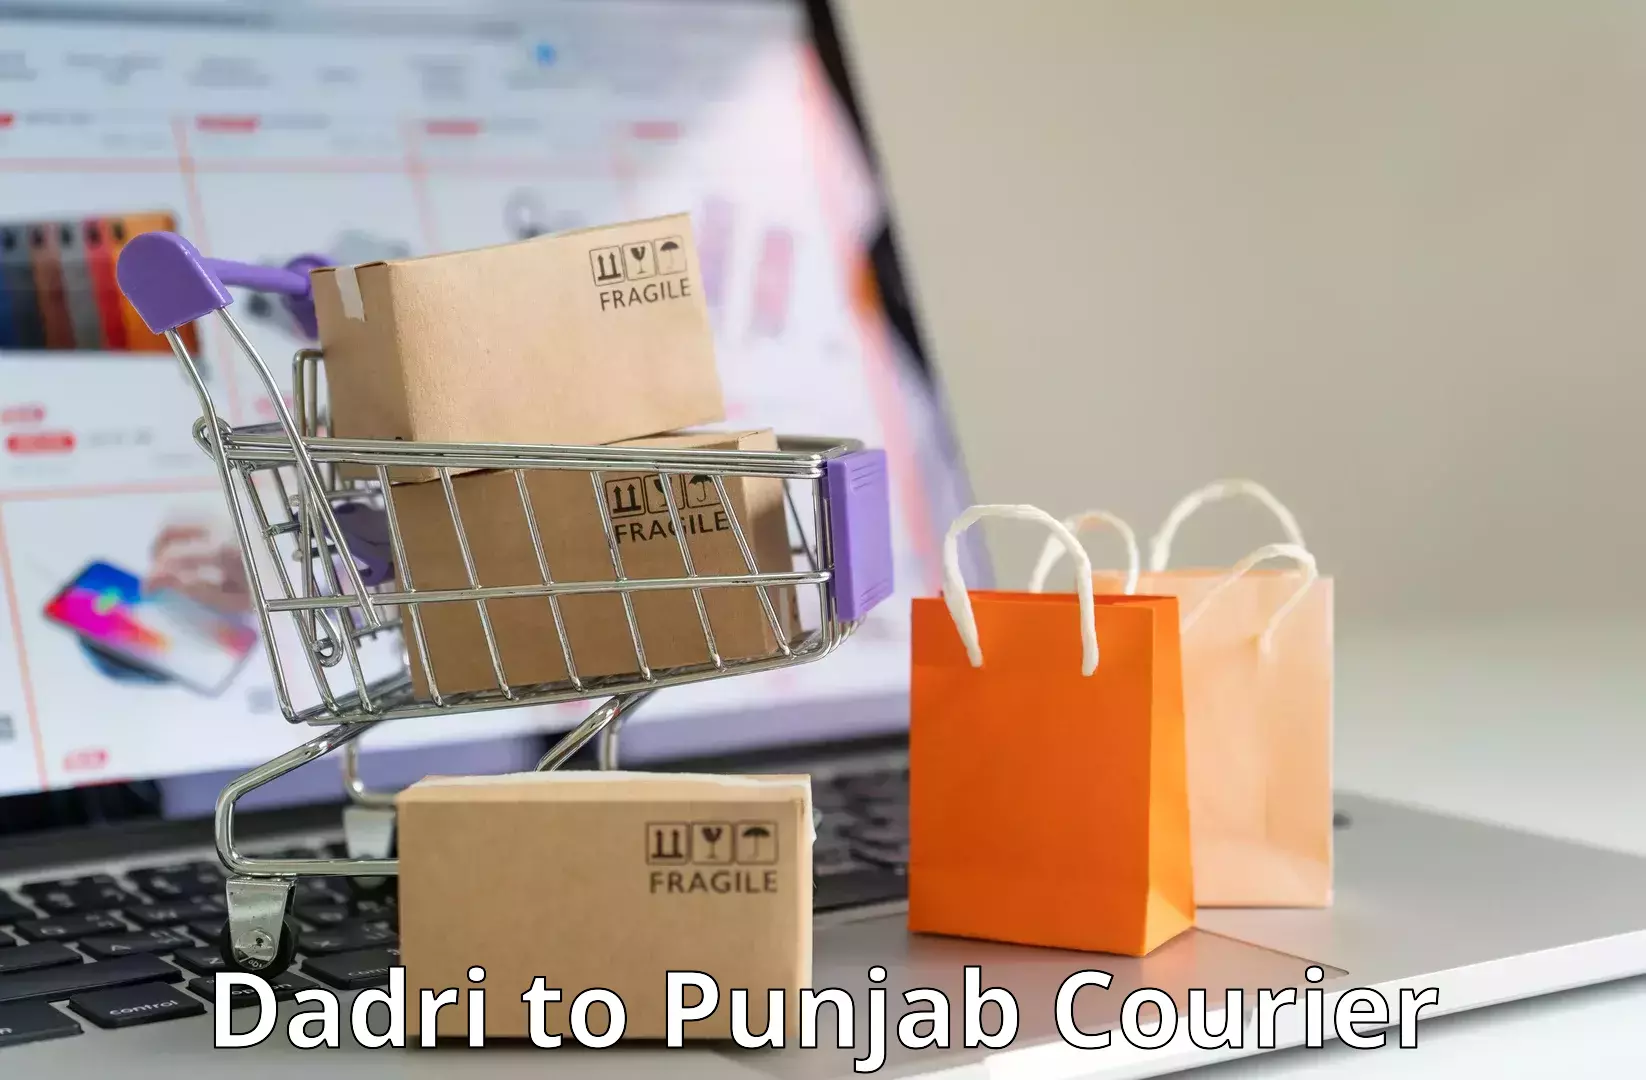 Courier service booking Dadri to Punjab